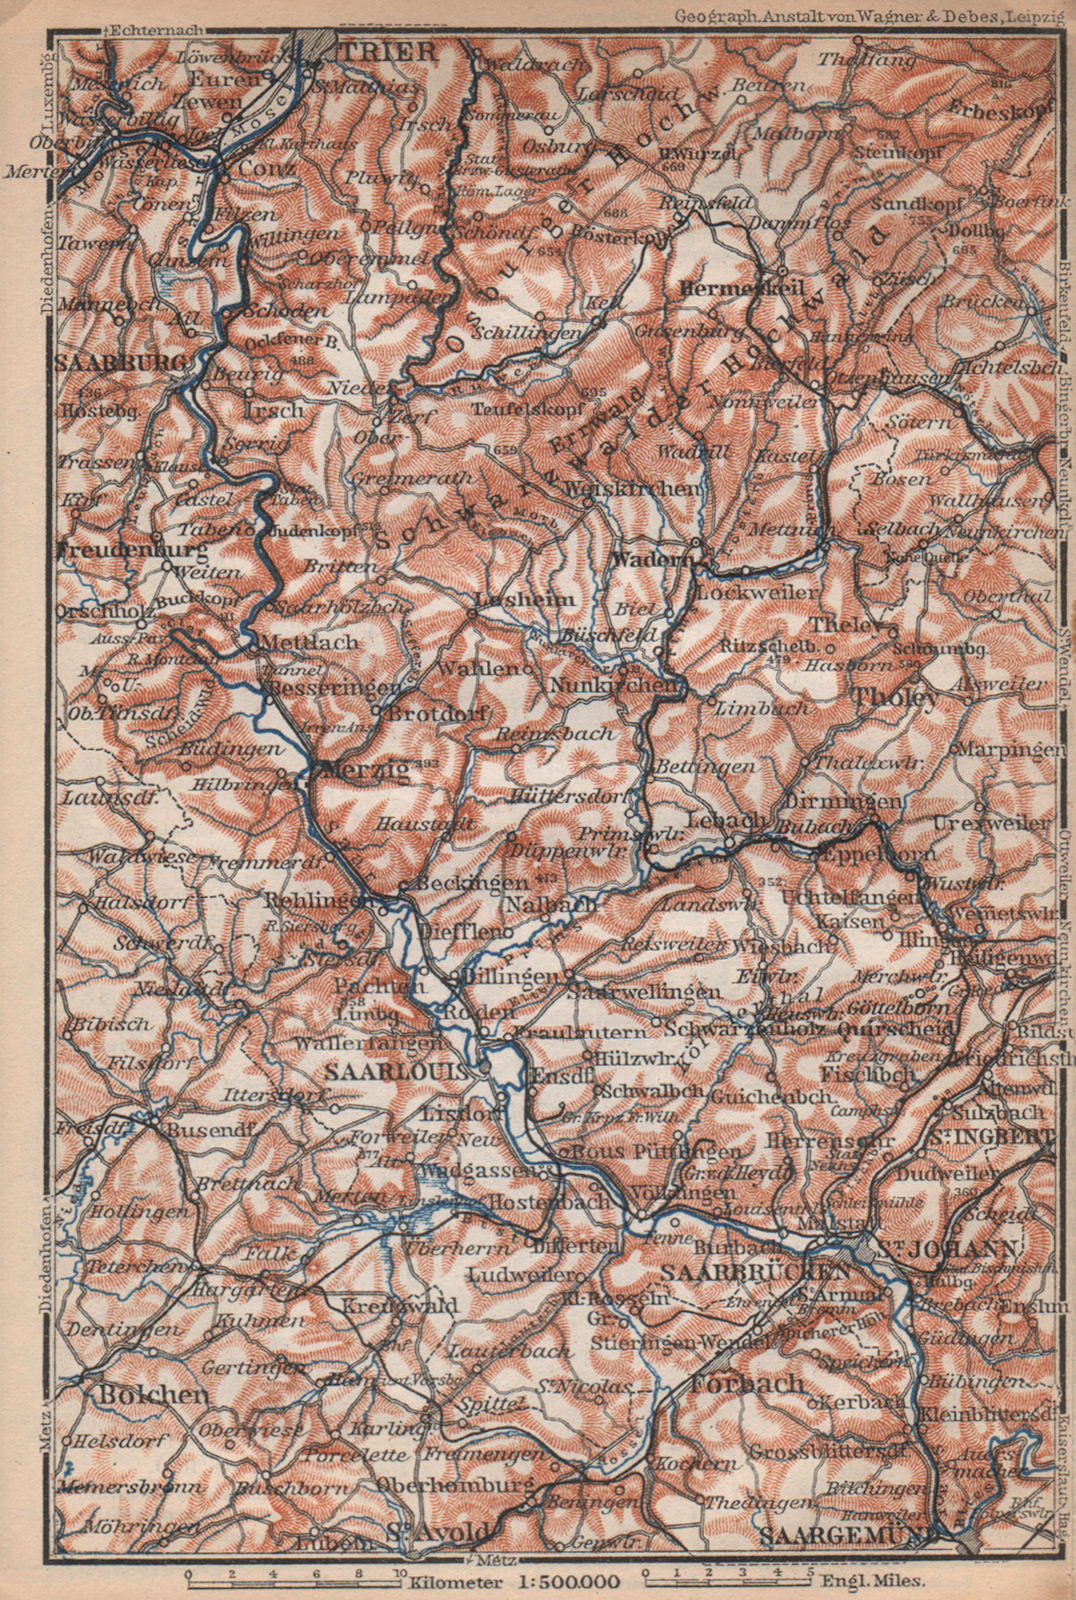 SAAR SARRE RIVER VALLEY. Trier Saarbruckem Saarlouis Saarburg karte 1896 map